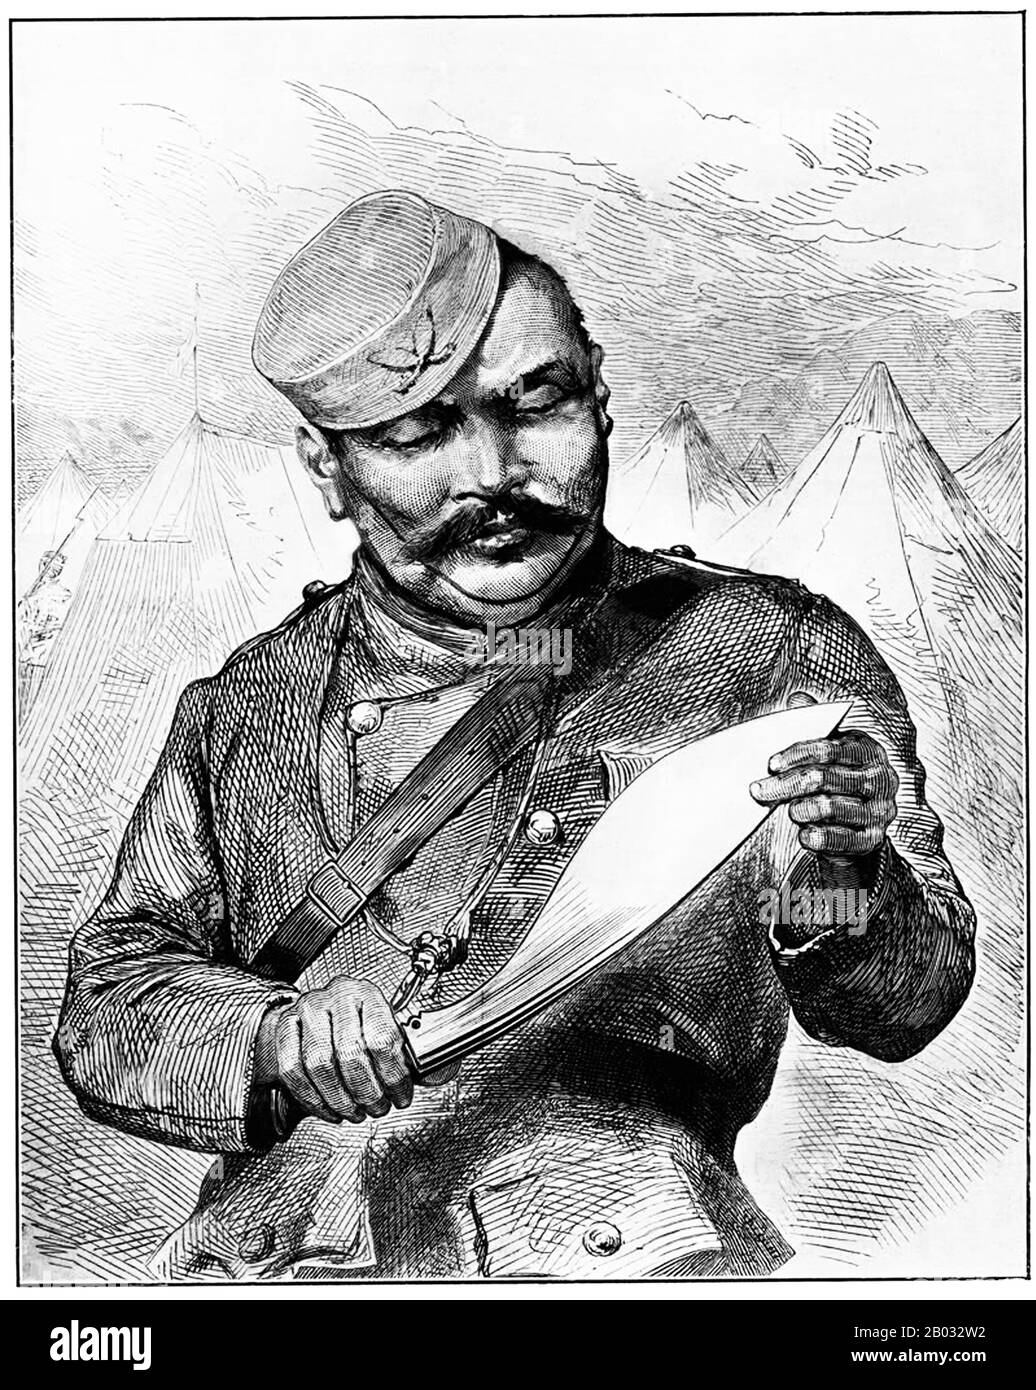 Les Gurkhas sont des soldats du Népal. Le nom peut être tracé au guerrier hindou médiéval Saint Guru Gorakhnath qui a un sanctuaire historique à Gorkha, au Népal. Gurkhas sont étroitement associés aux khukuri, un couteau népalais à la malédiction et ont une réputation bien connue pour leur proesse militaire effréante. L'ancien chef d'état-major de l'armée indienne, le maréchal Sam Manekshaw, a déclaré une fois que "Si un homme dit qu'il n'a pas peur de mourir, il menait ou est un Gurkha". Banque D'Images